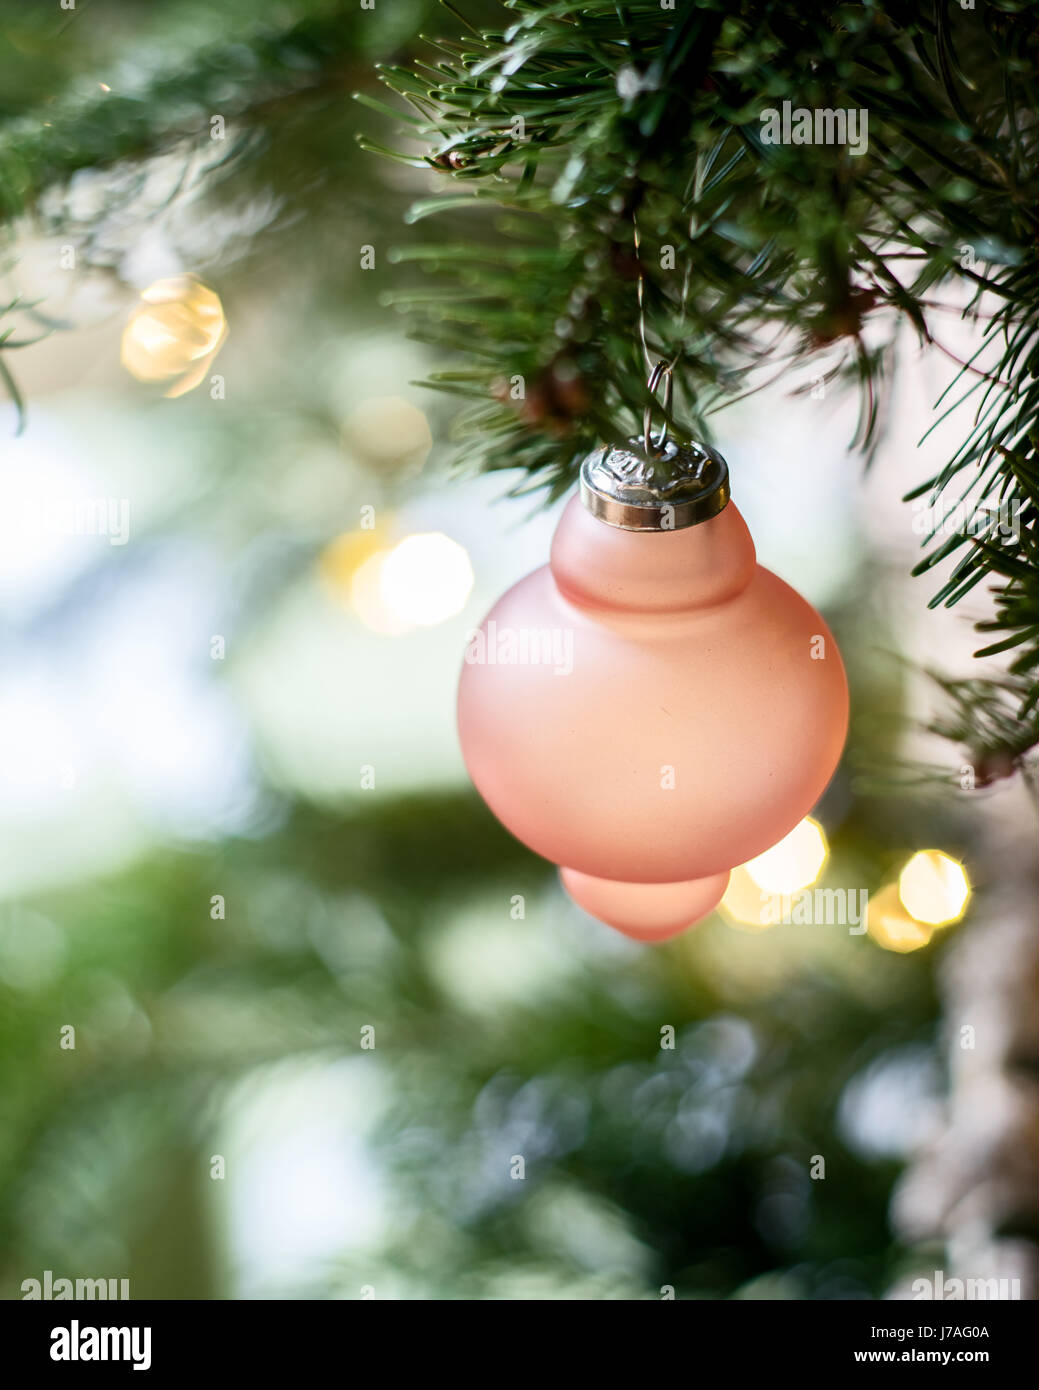 Détail d'un ornement de verre danois rose sur un arbre de Noël Banque D'Images